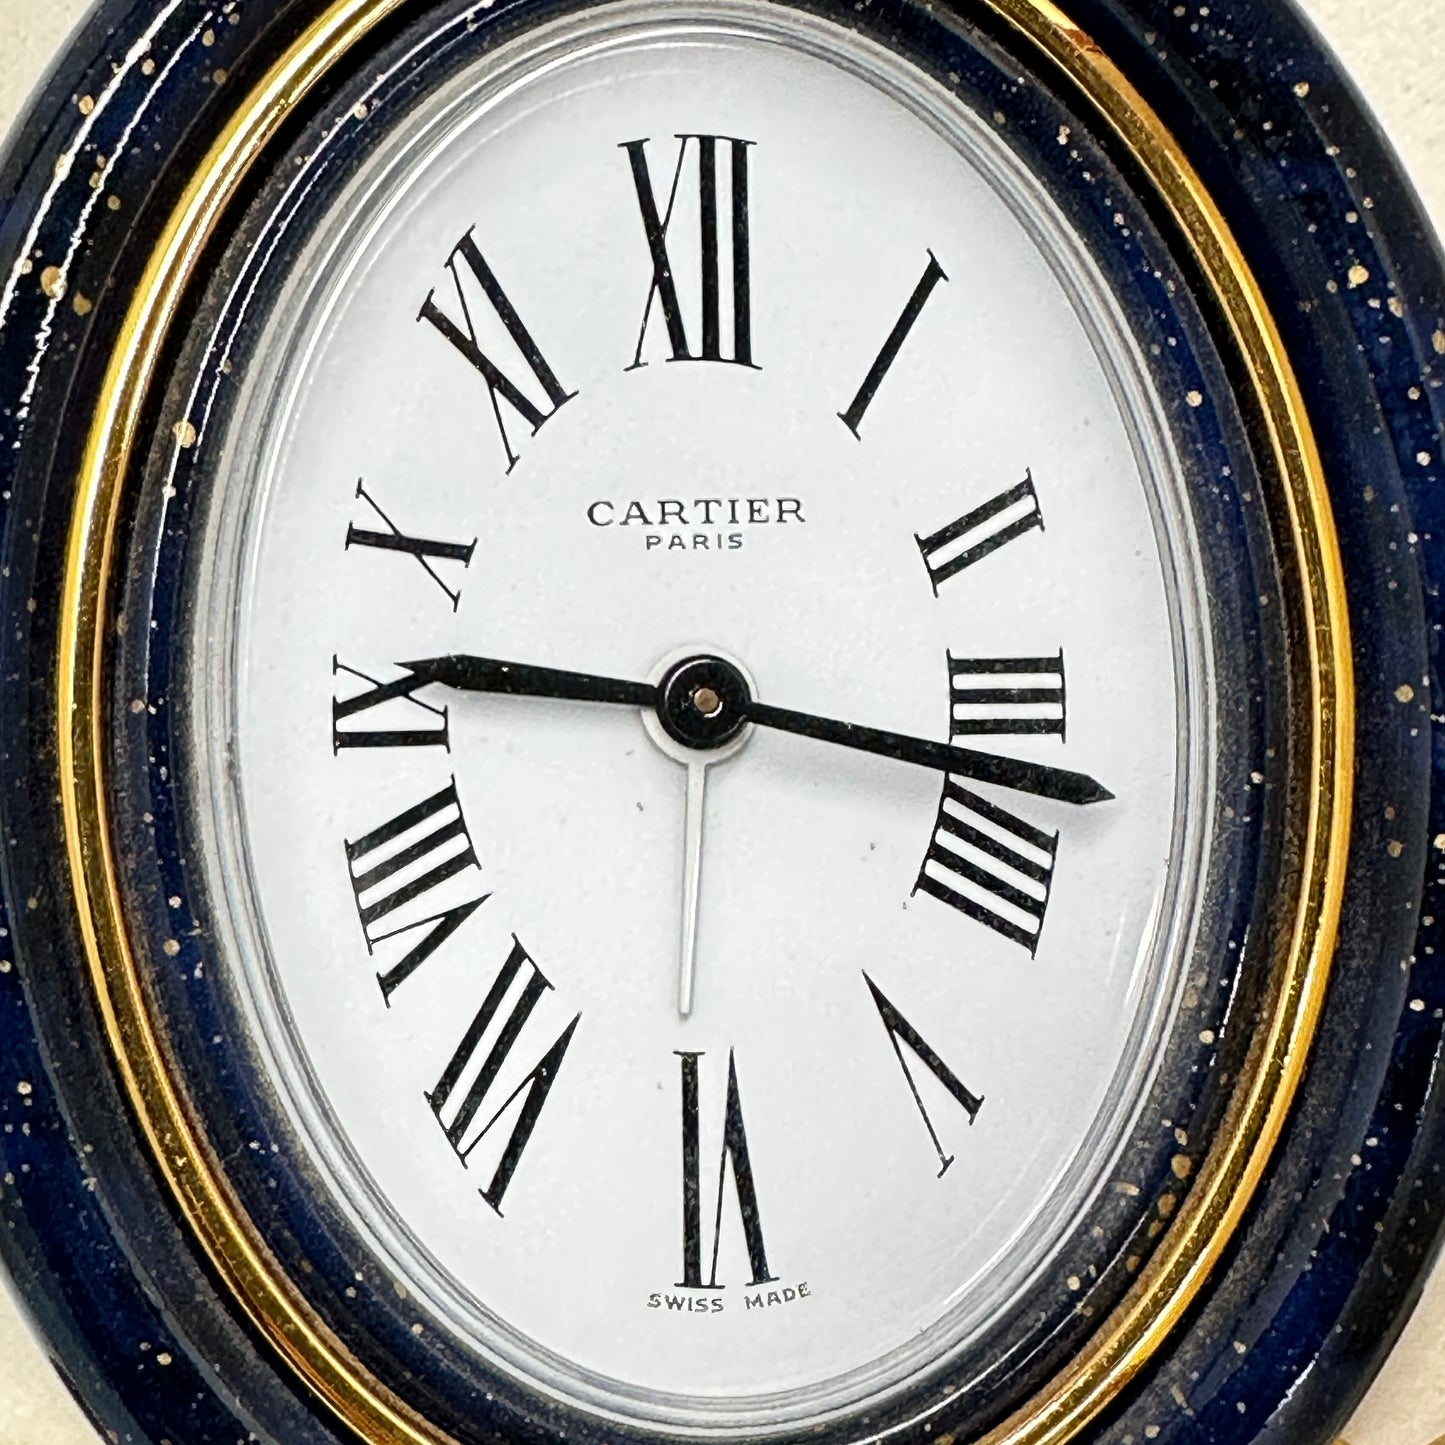 Les Must de Cartier Paris Alarm Clock and Picture Frame Set